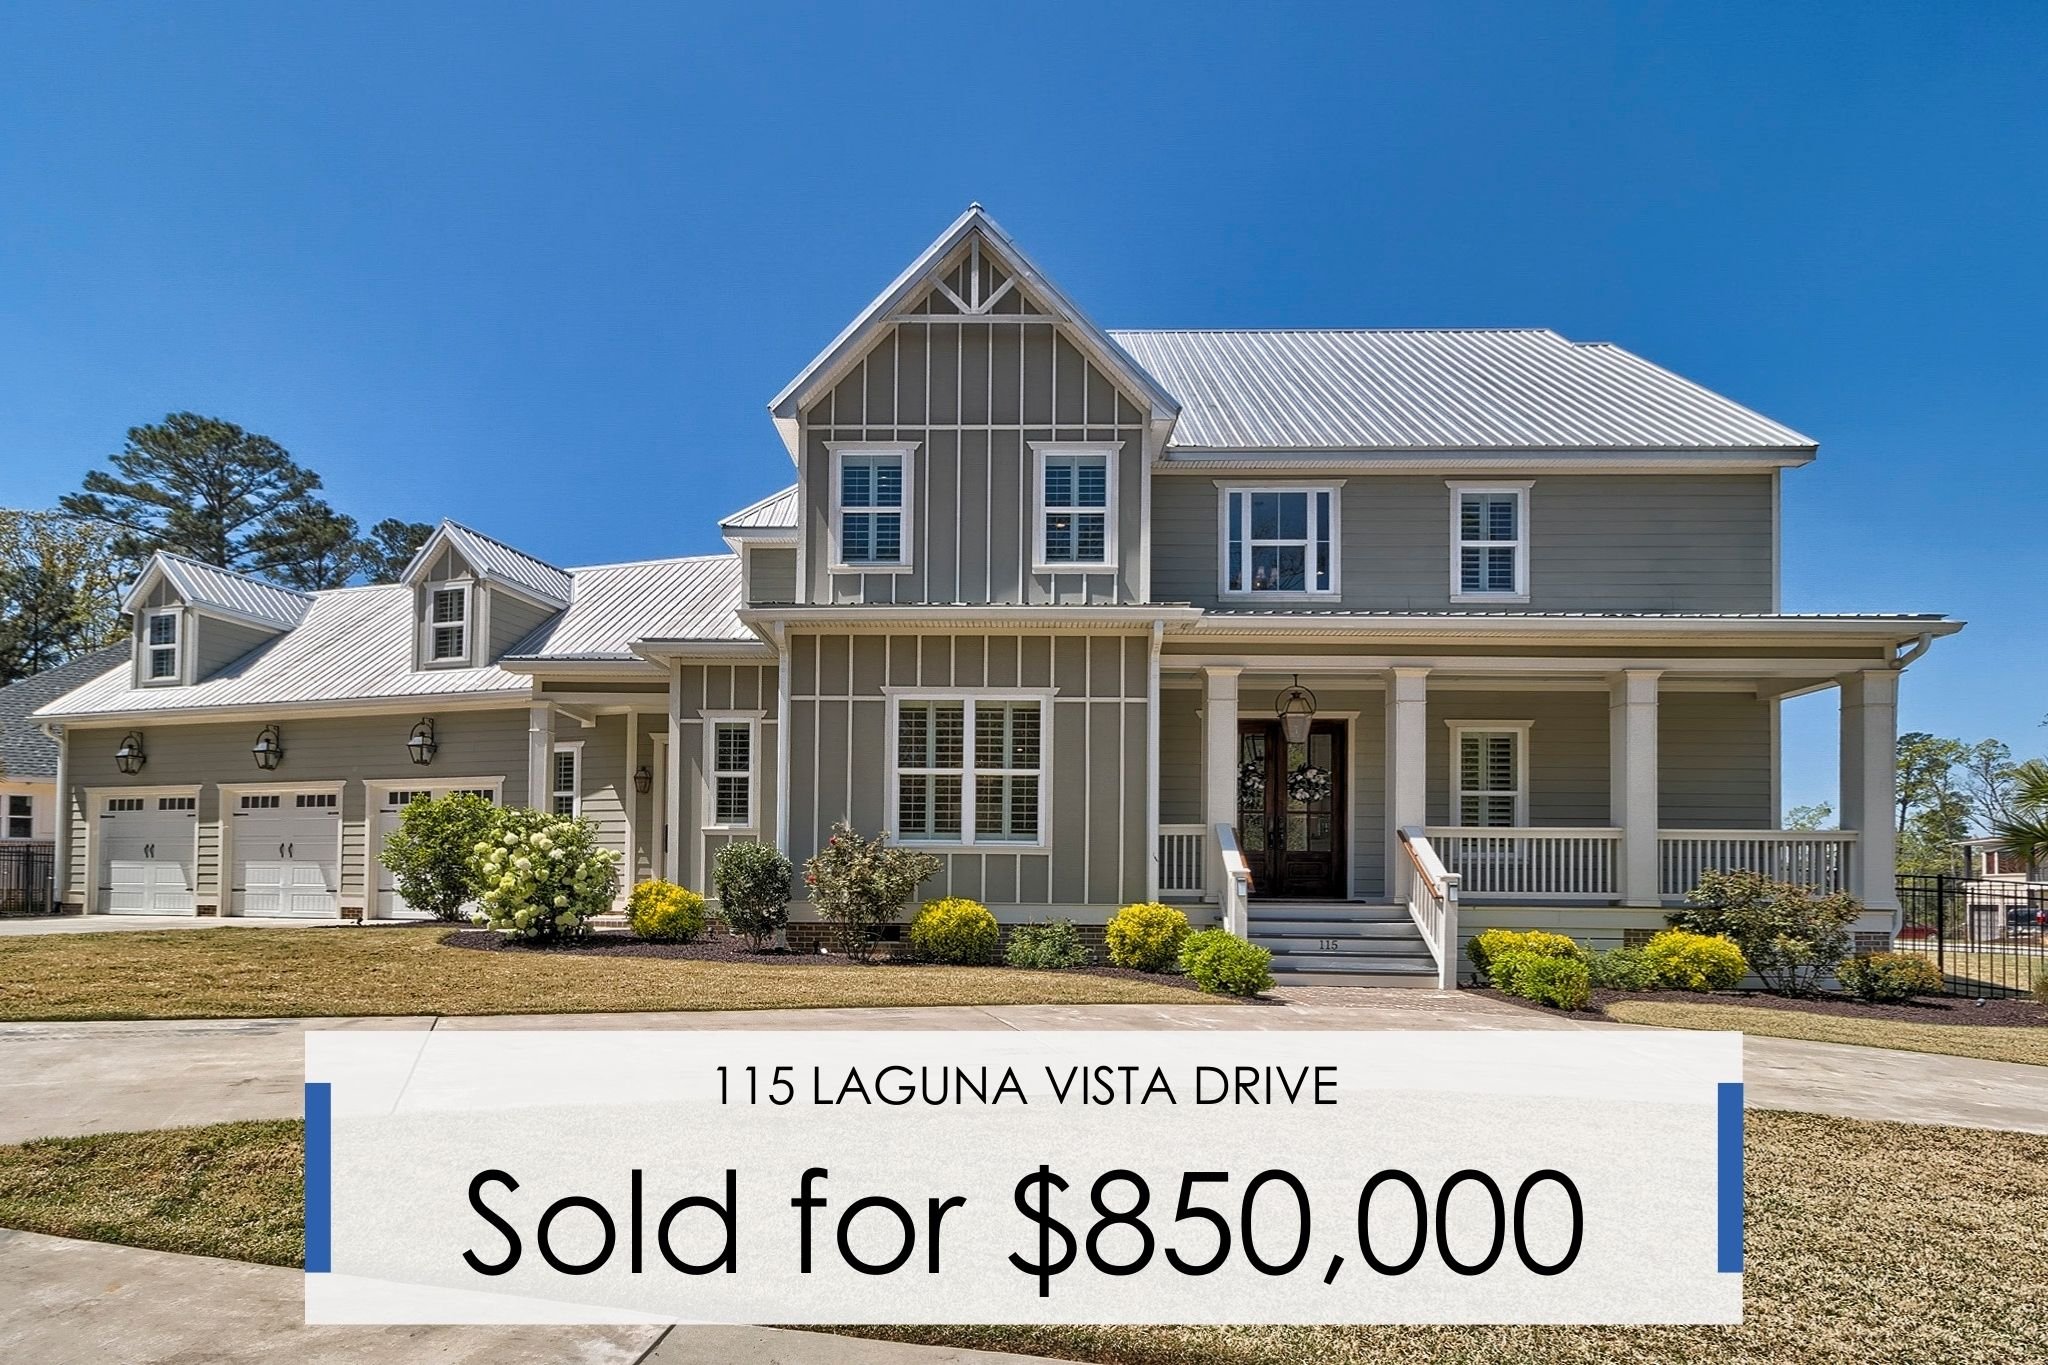 115 Laguna Vista Drive | Sold for $850,000